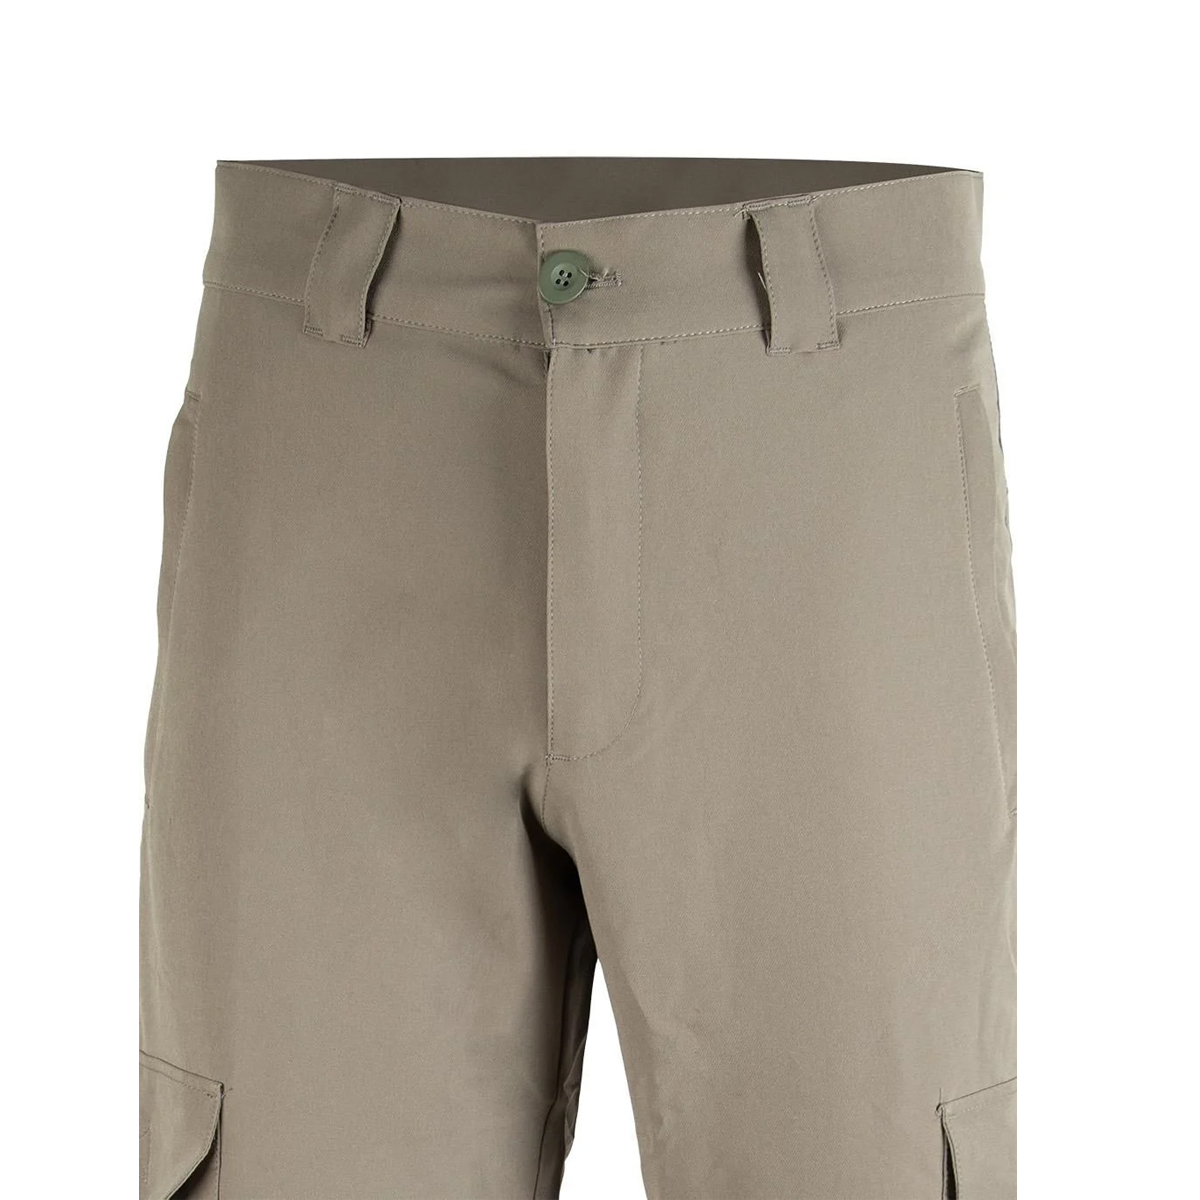 Likralı yırtılmaya dayanıklı esnek kargo pantolon altı cepli kemer ile kullanıma uygun